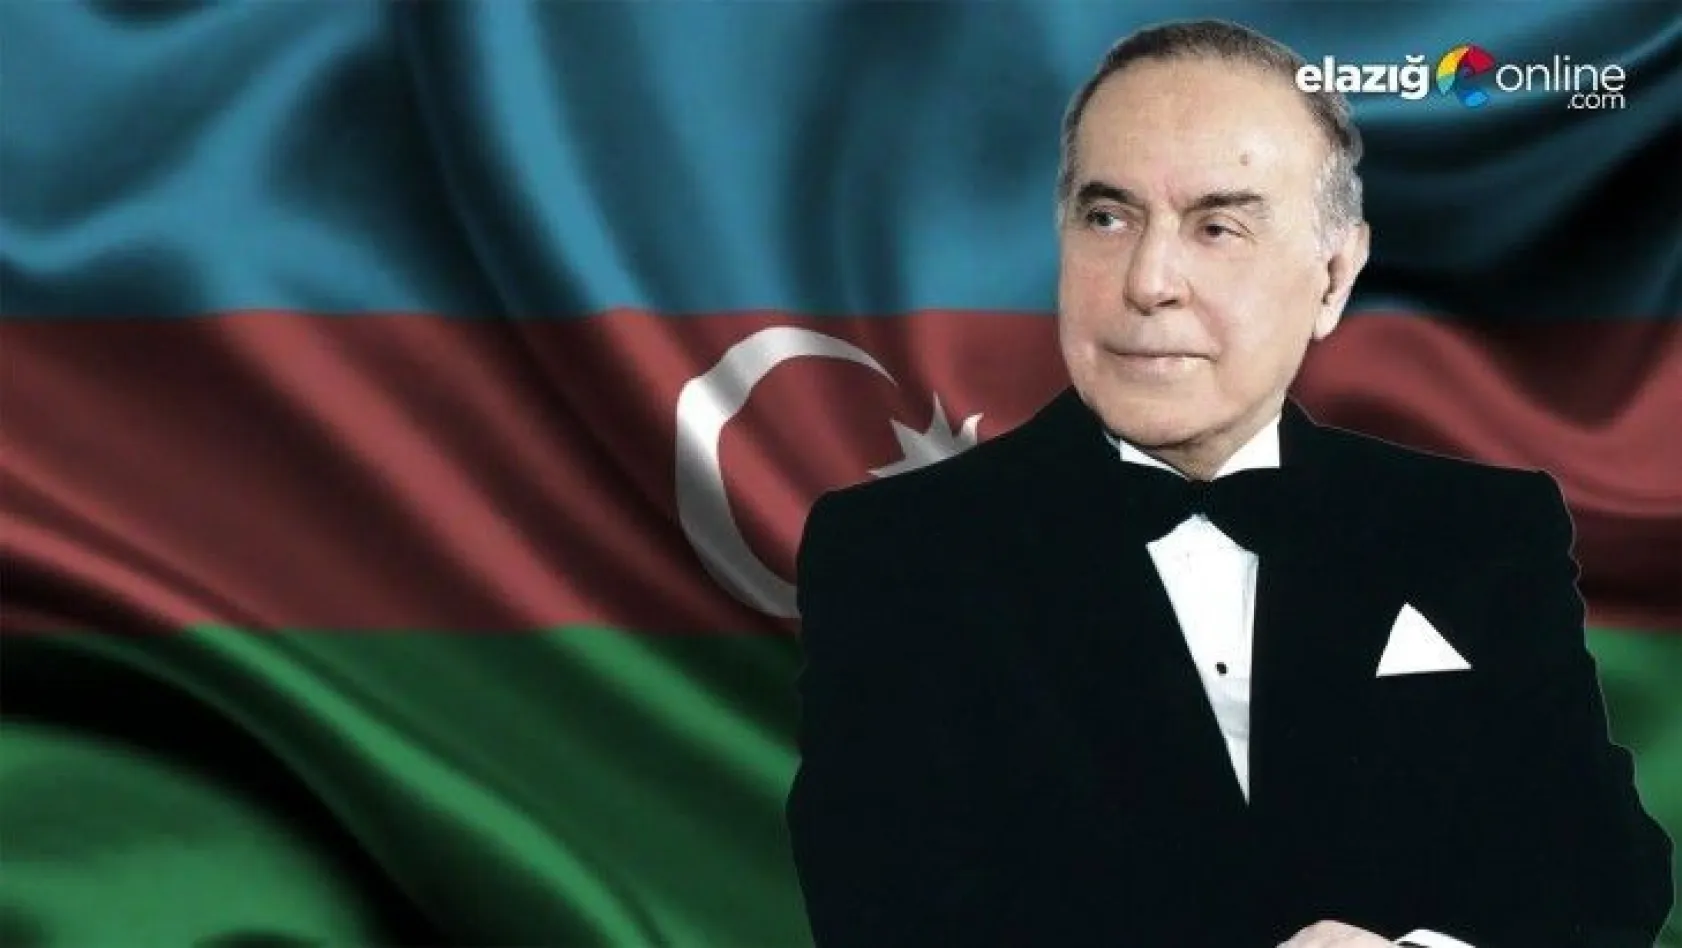 Azerbaycan milli liderini anıyor